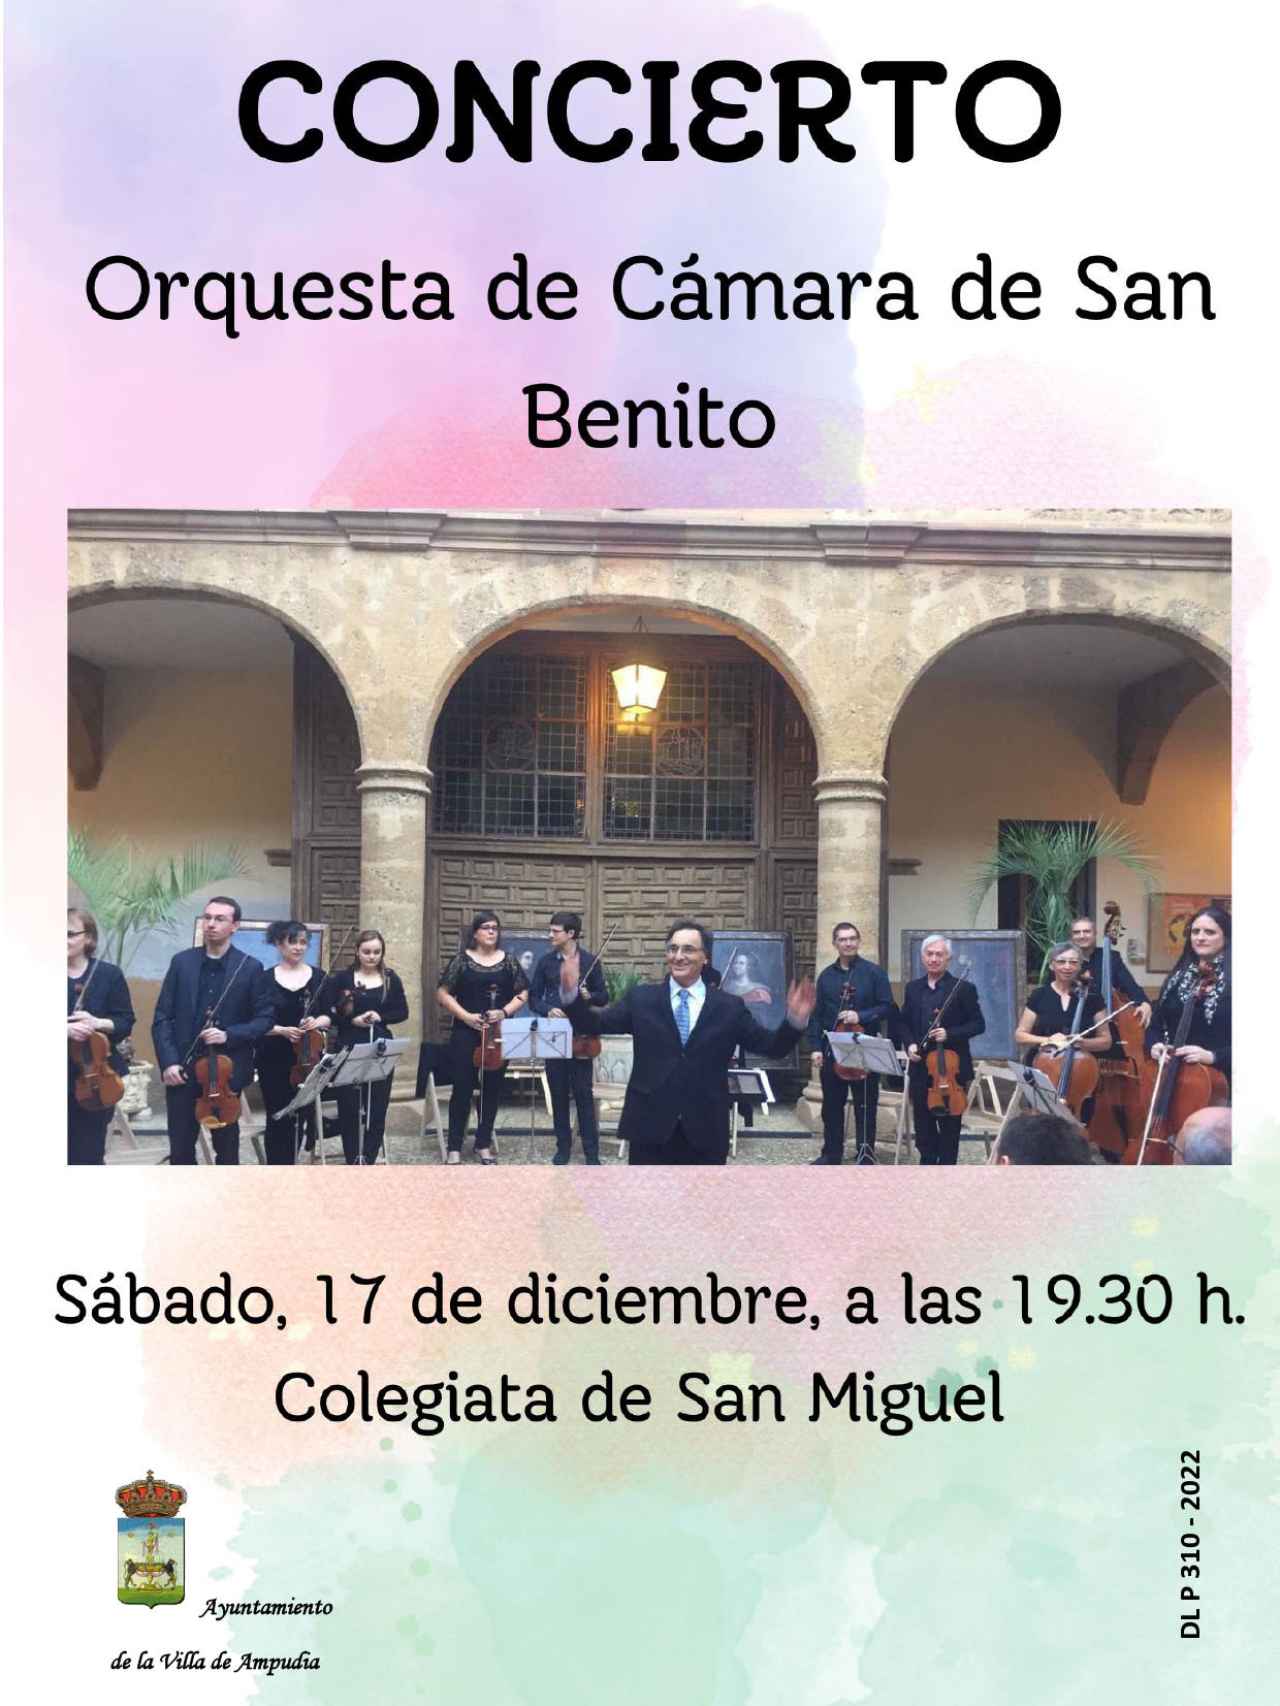 Concierto Orquesta de Cámara de San Benito en Ampudia